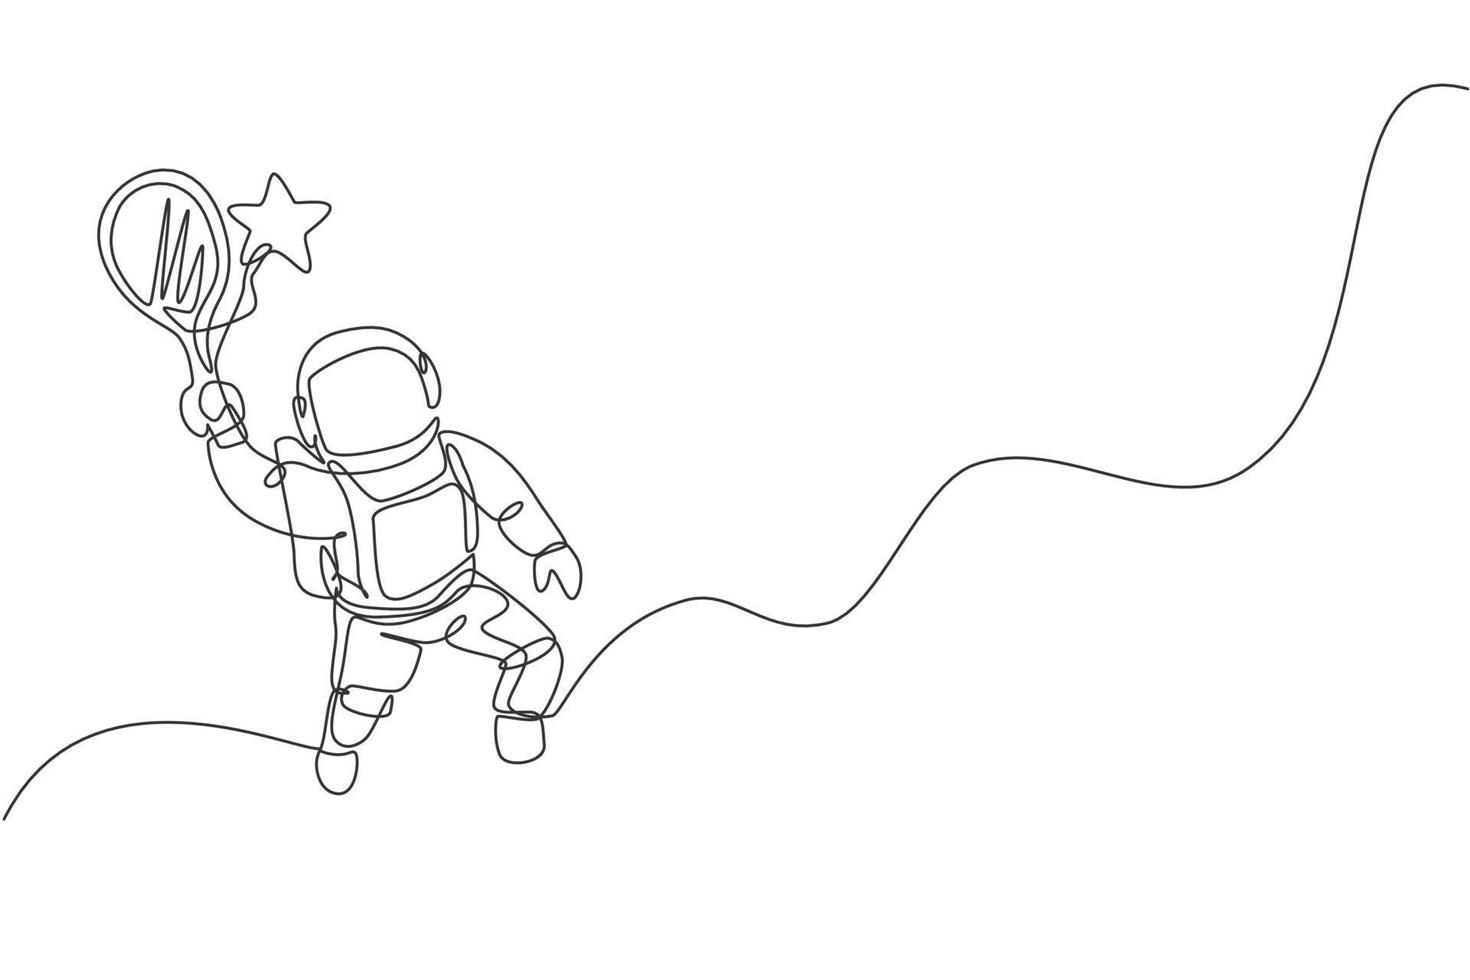 disegno di una singola linea continua di astronauta scientifico galleggiante nella passeggiata spaziale che colpisce la stella usando la racchetta. esplorazione dello spazio profondo fantasy, concetto di finzione. illustrazione vettoriale di design alla moda con una linea di disegno